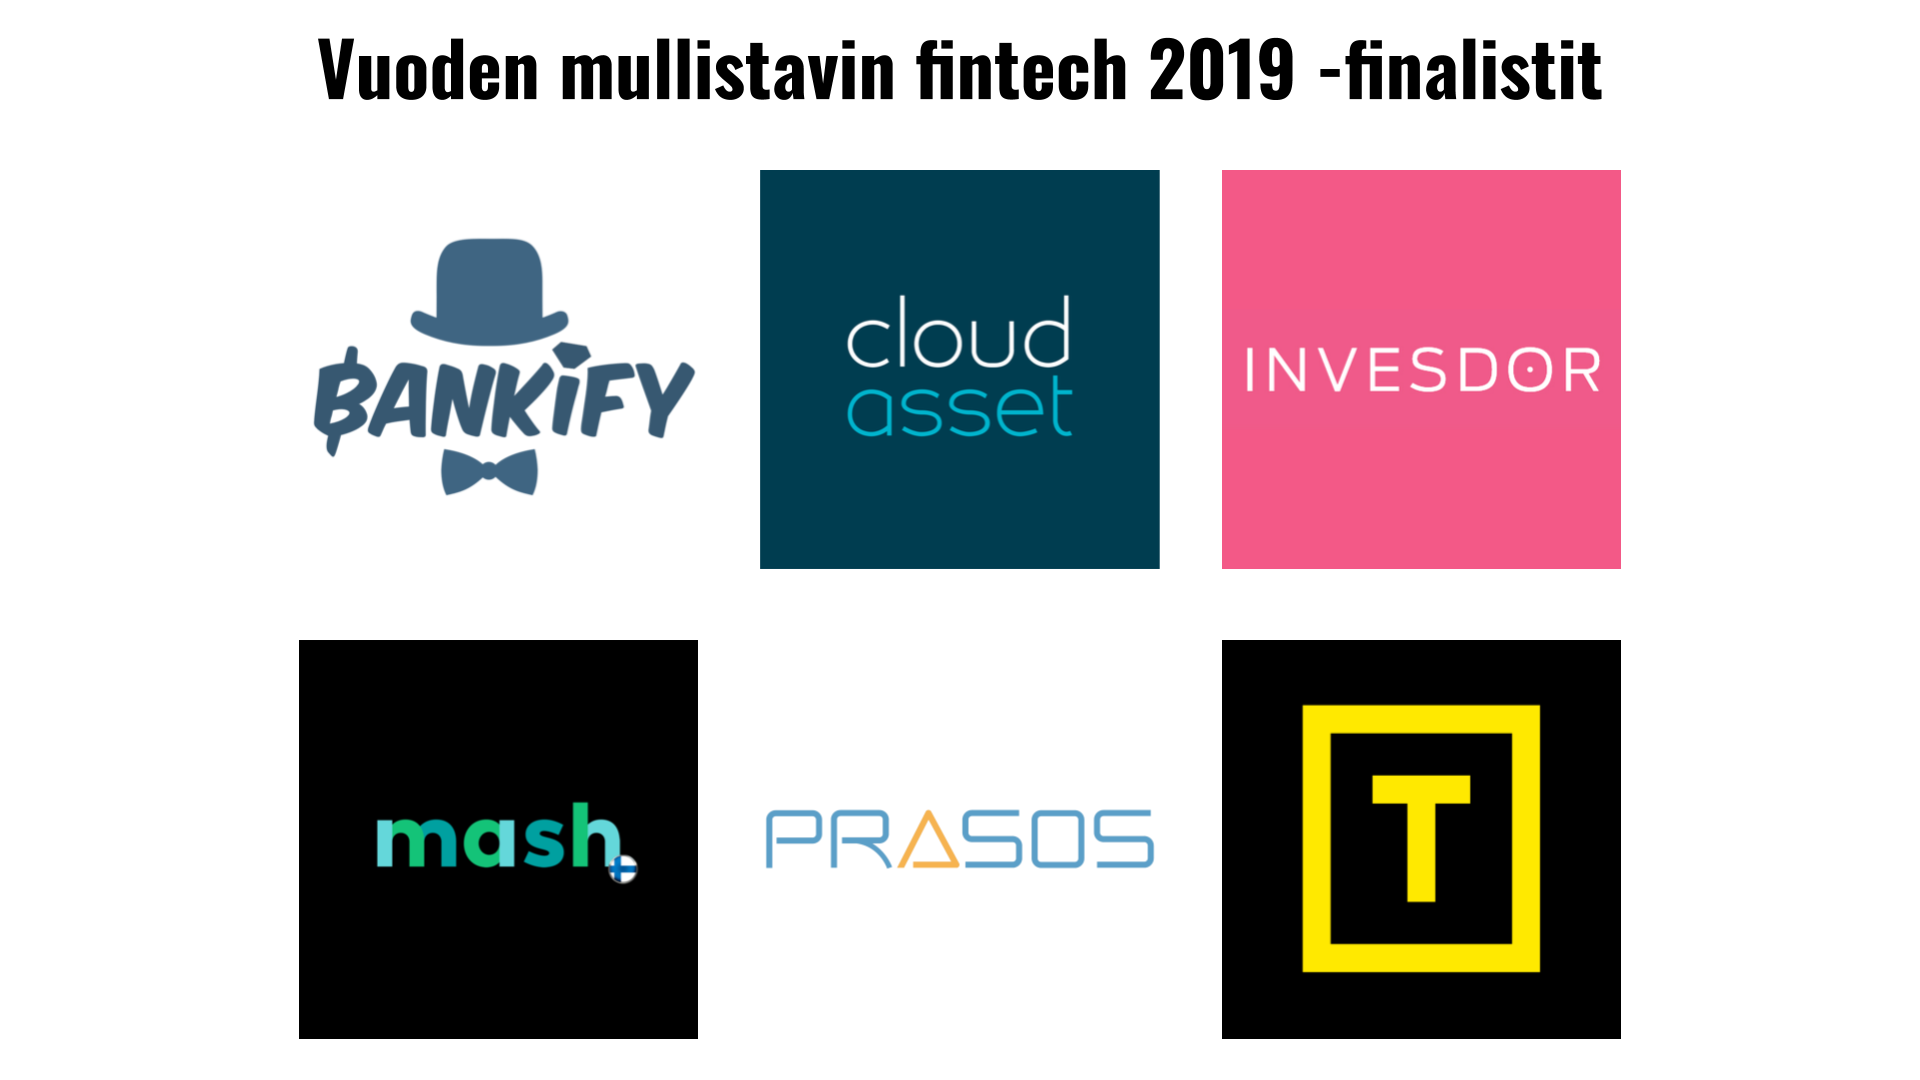 Vuoden fintech -finalistit 2019 ovatâ¦